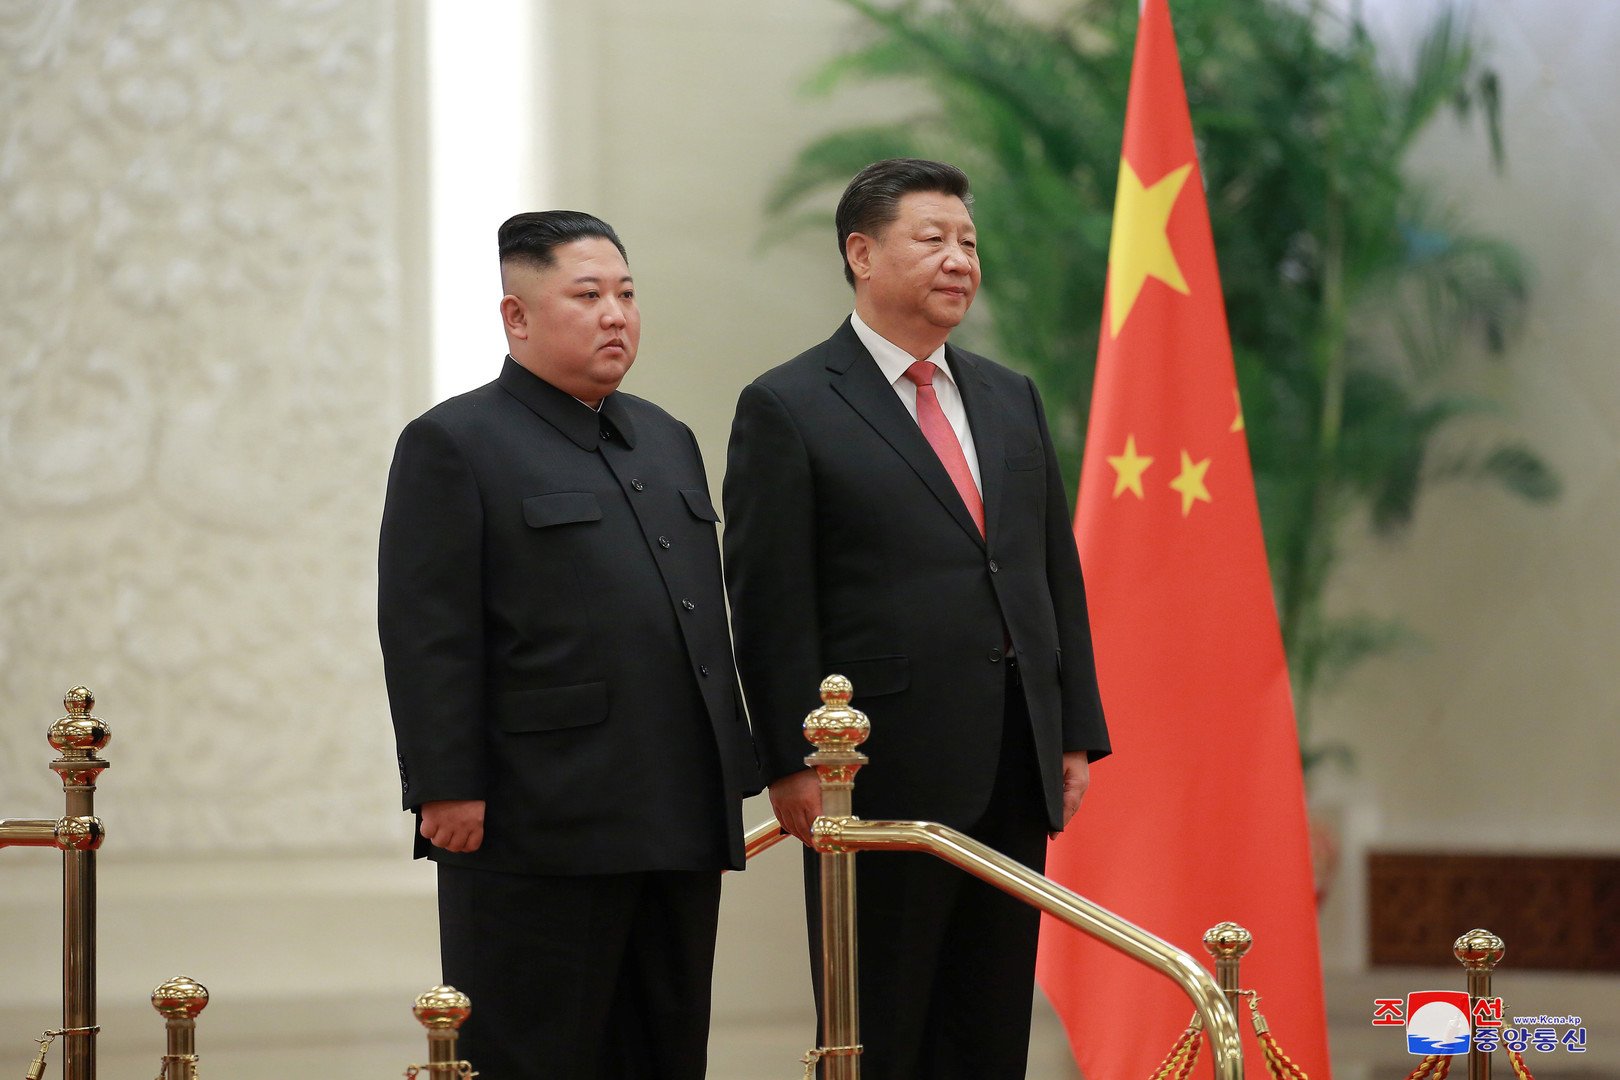 رئيس الصين يزور كوريا الشمالية في زيارة هي الأولى لرئيس صيني منذ 14 عاما